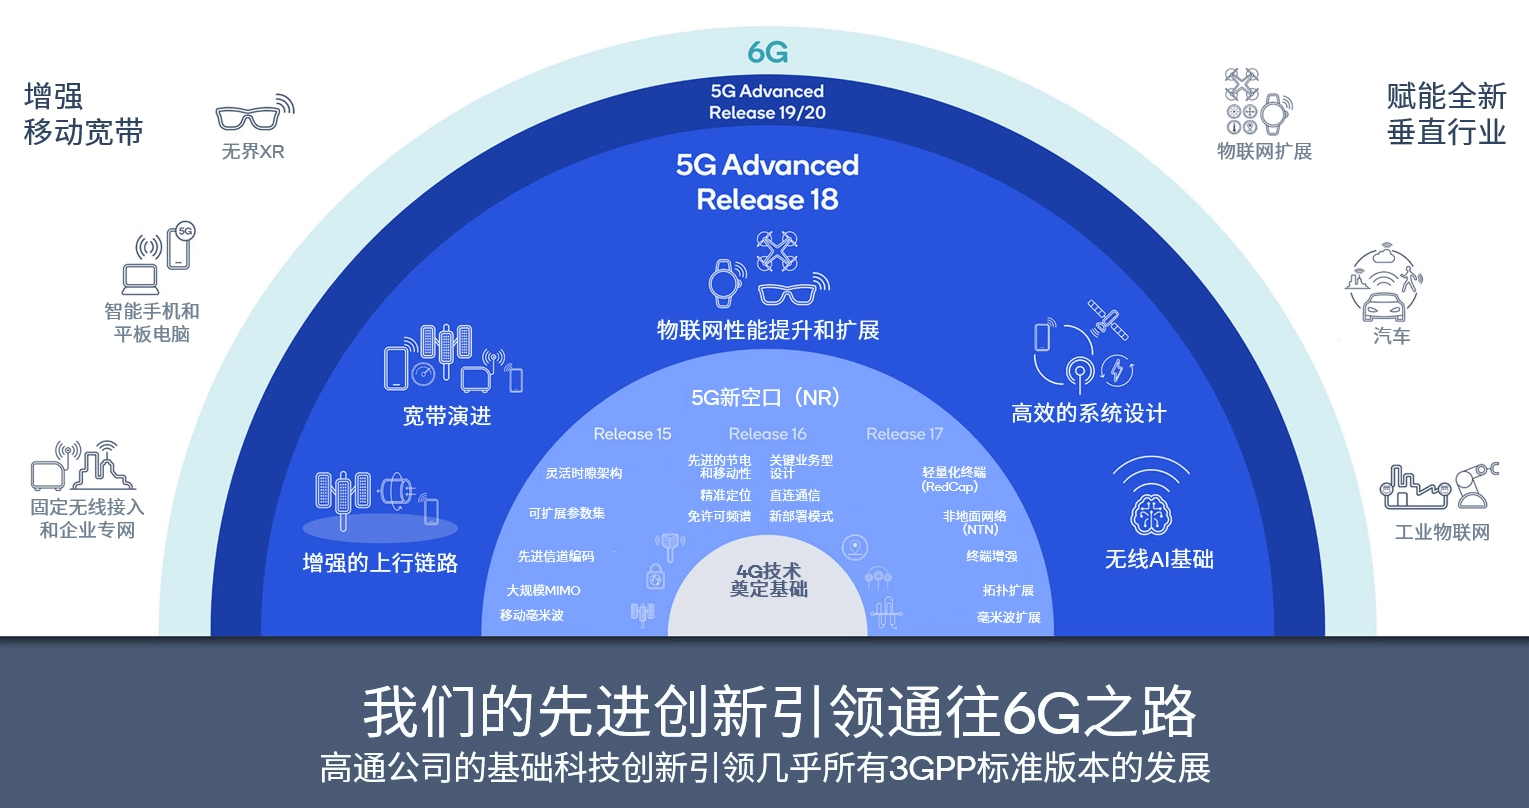 5G 与 6G 的区别：不仅仅是速度快那么简单  第7张